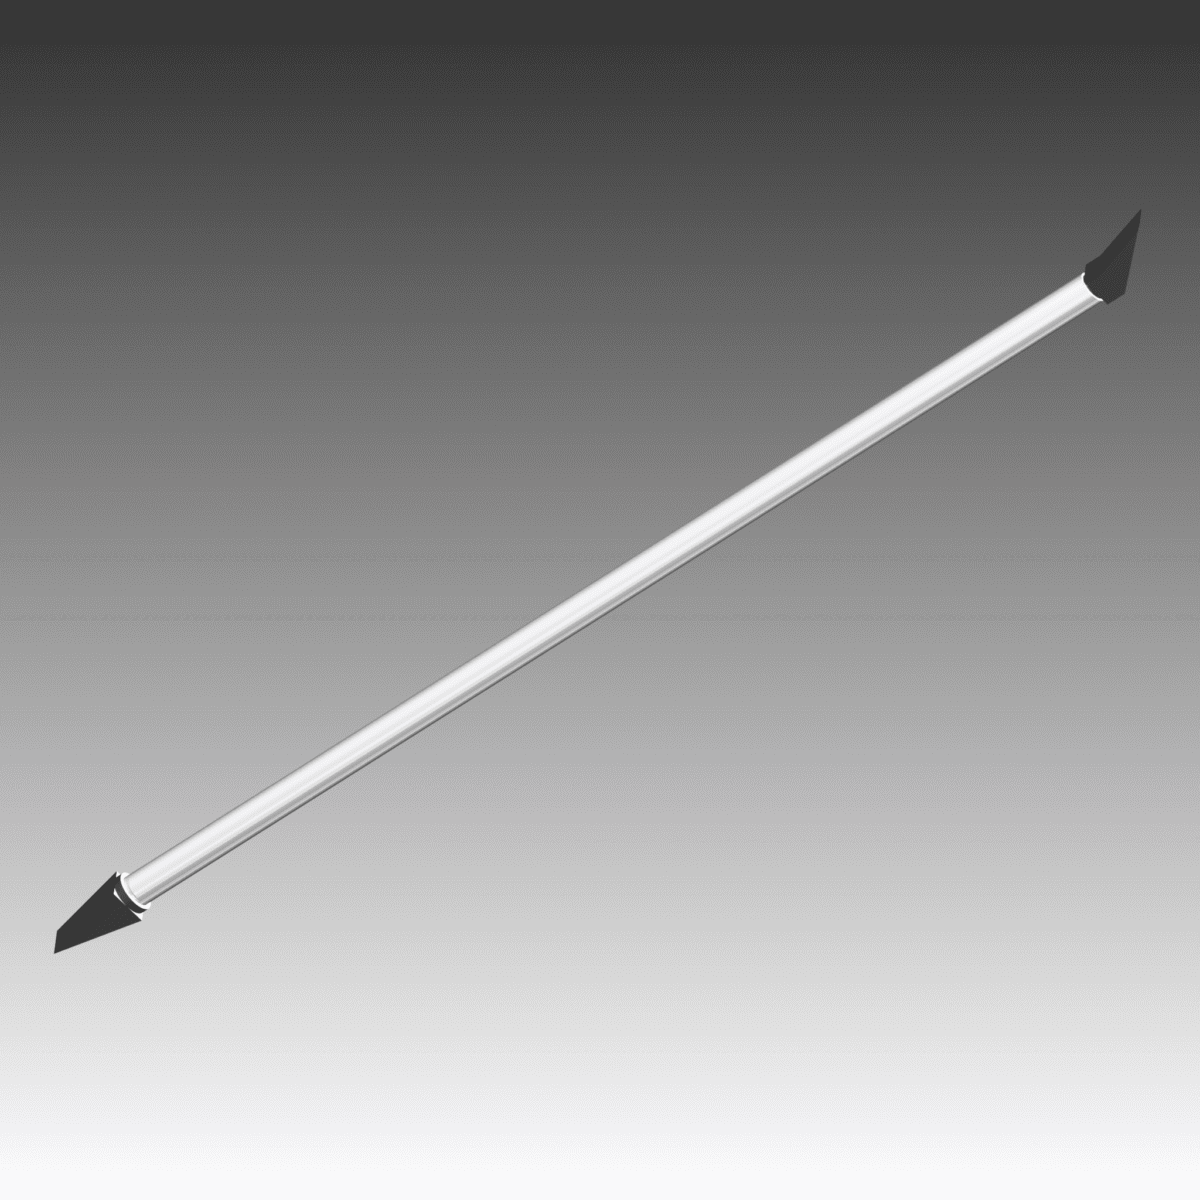 Pince ou canne à purger standard d'une longueur de 1,7m avec outils burin + pied de biche 140°